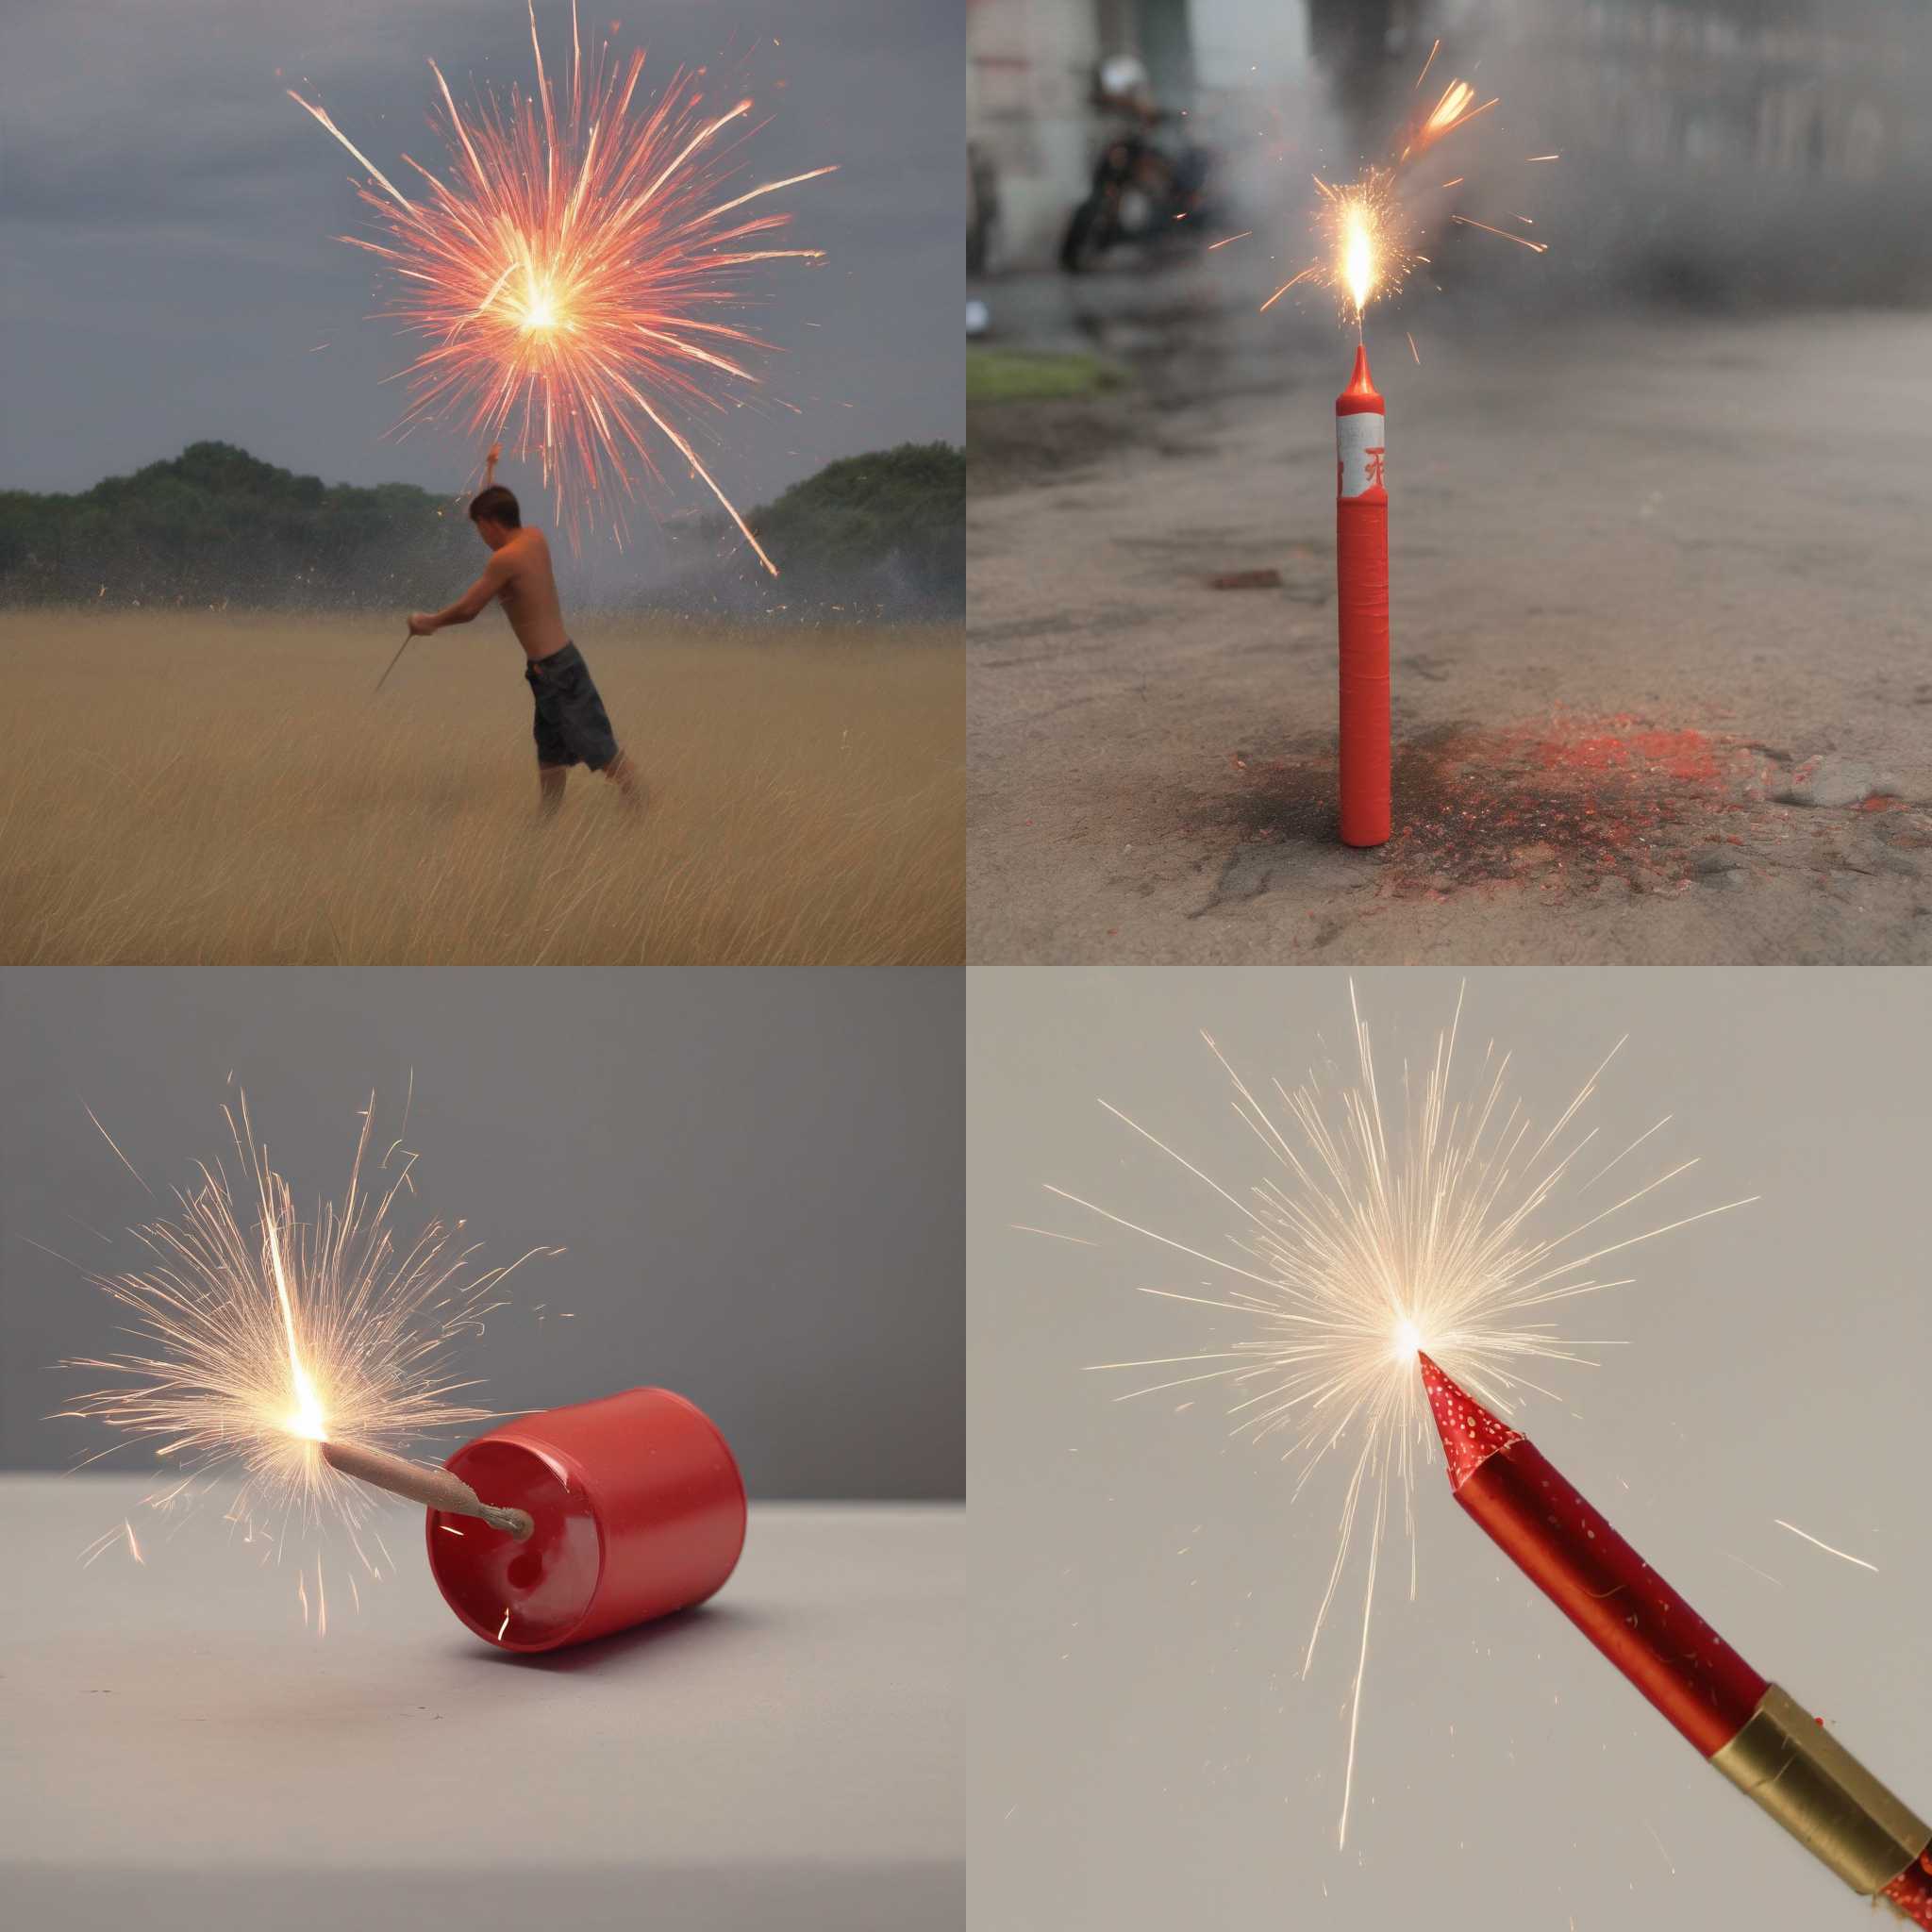 A firecracker in use